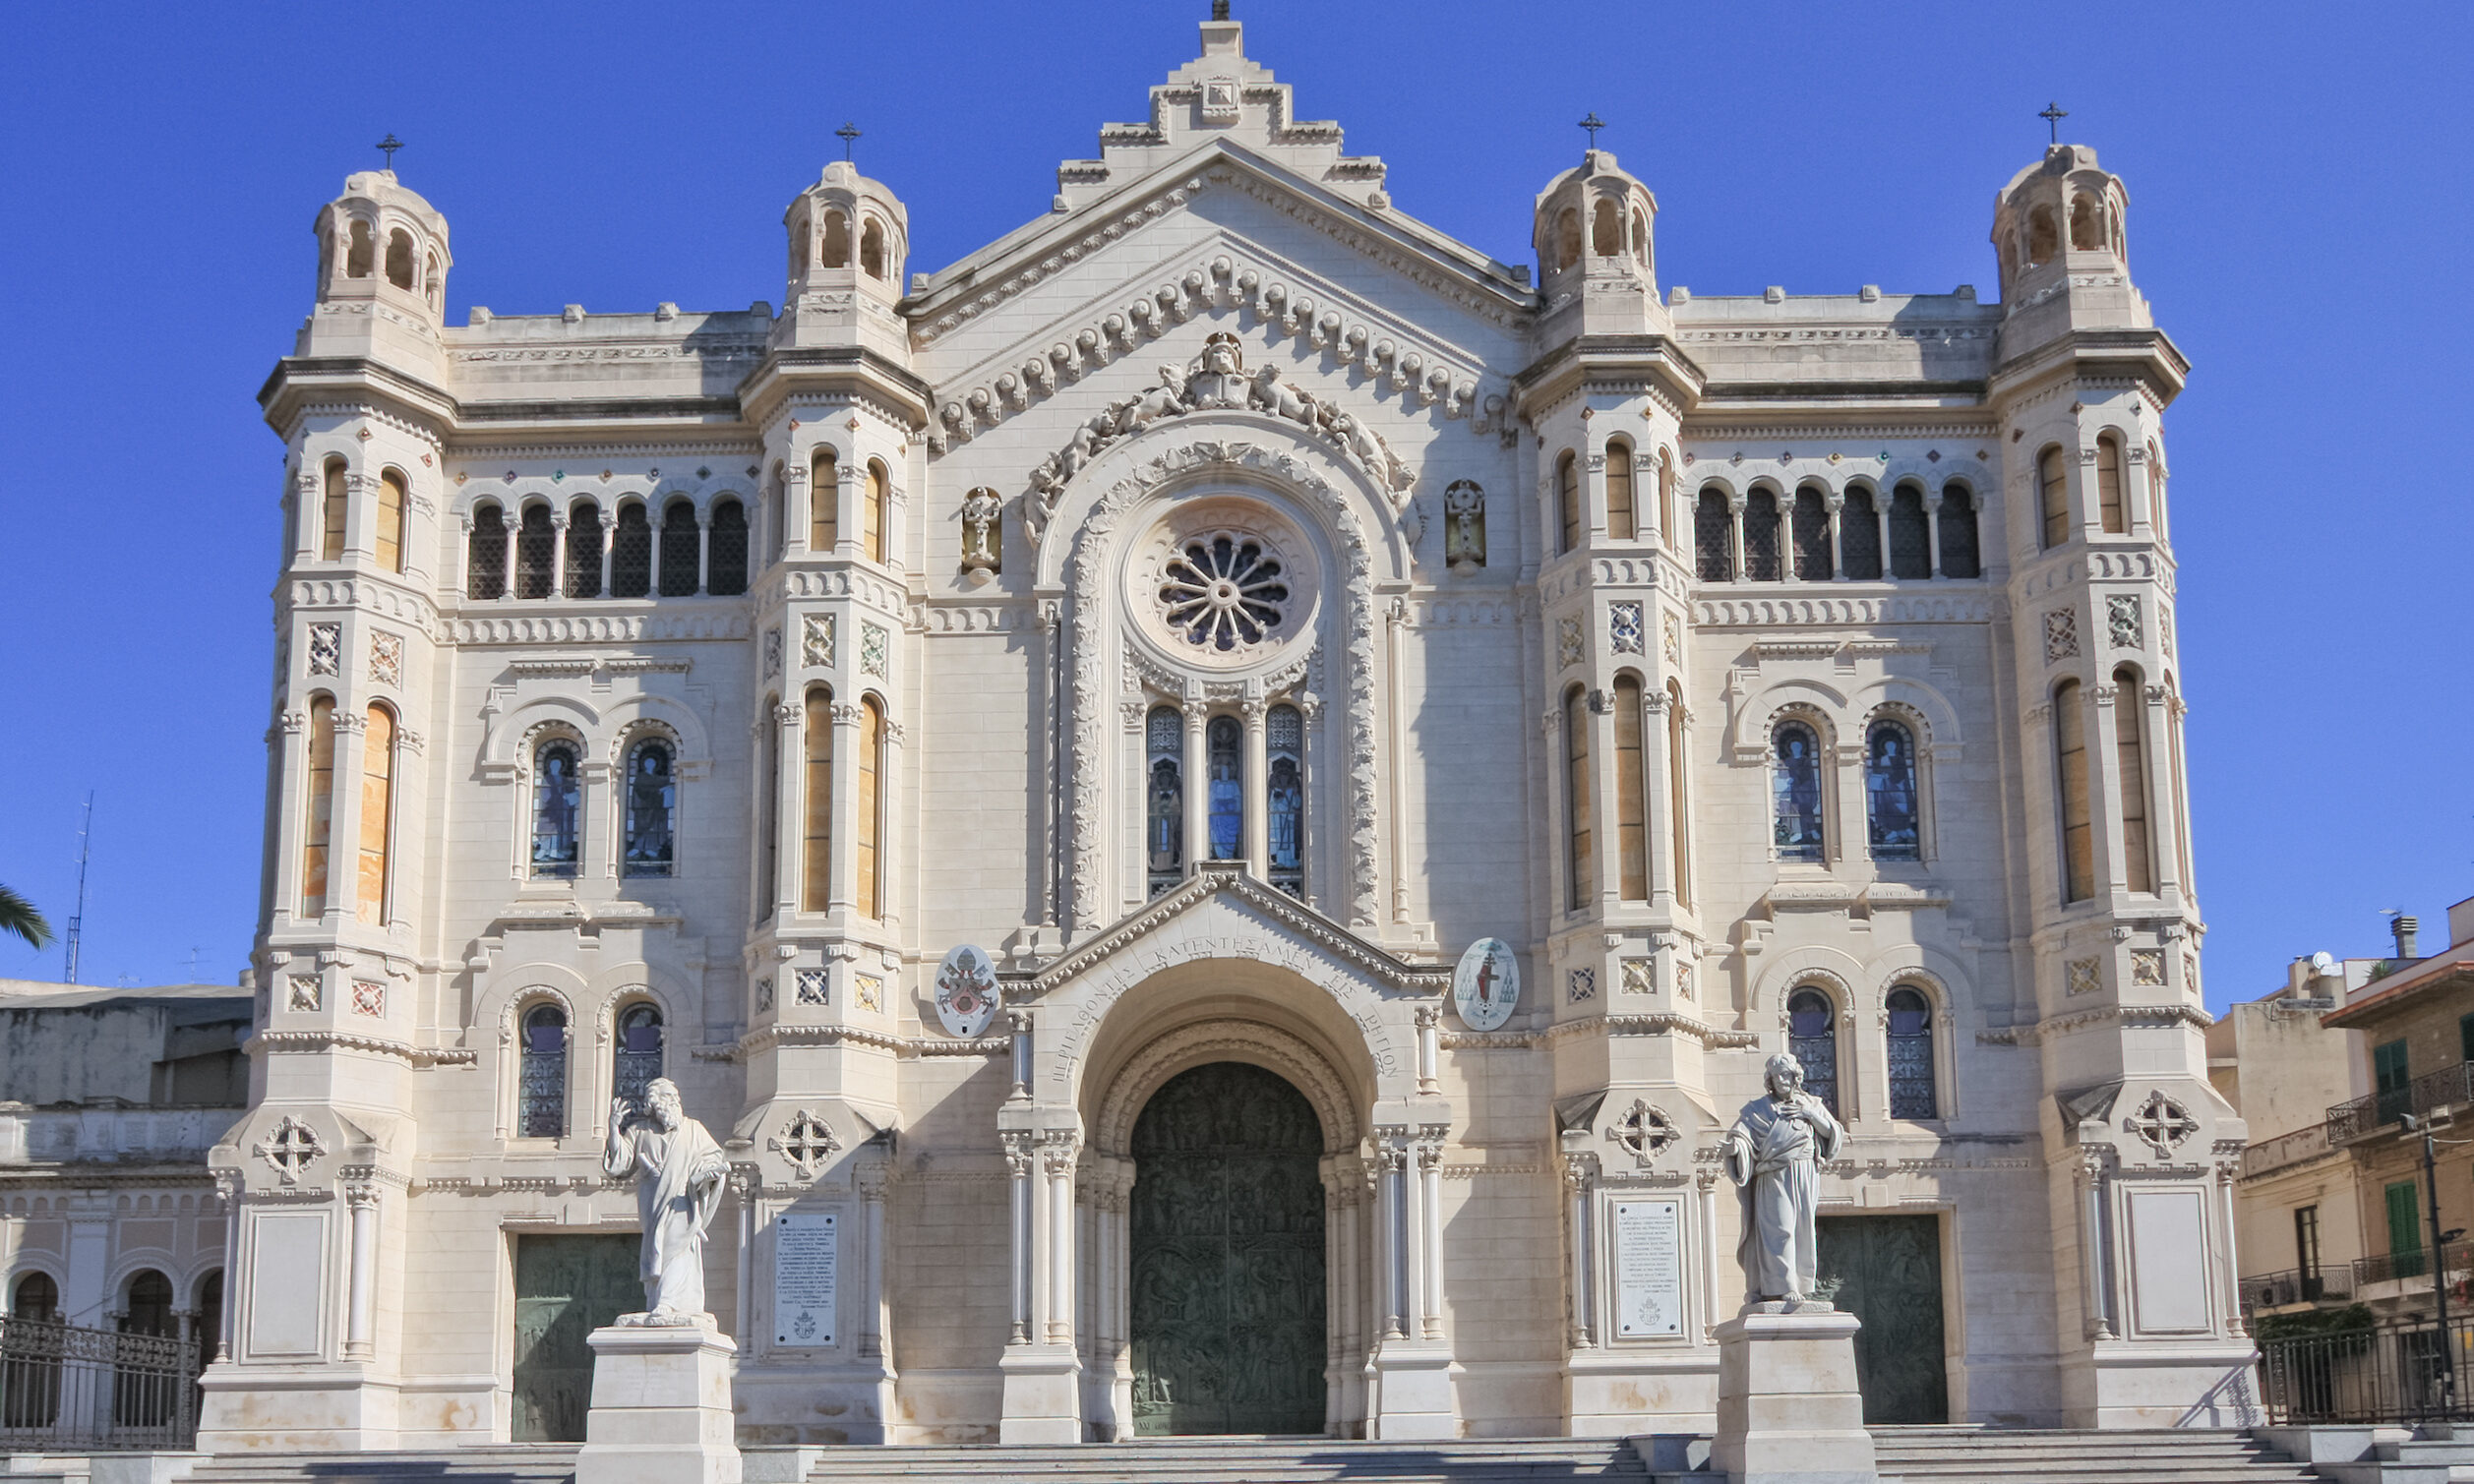 The Cathedral of Reggio Calabria